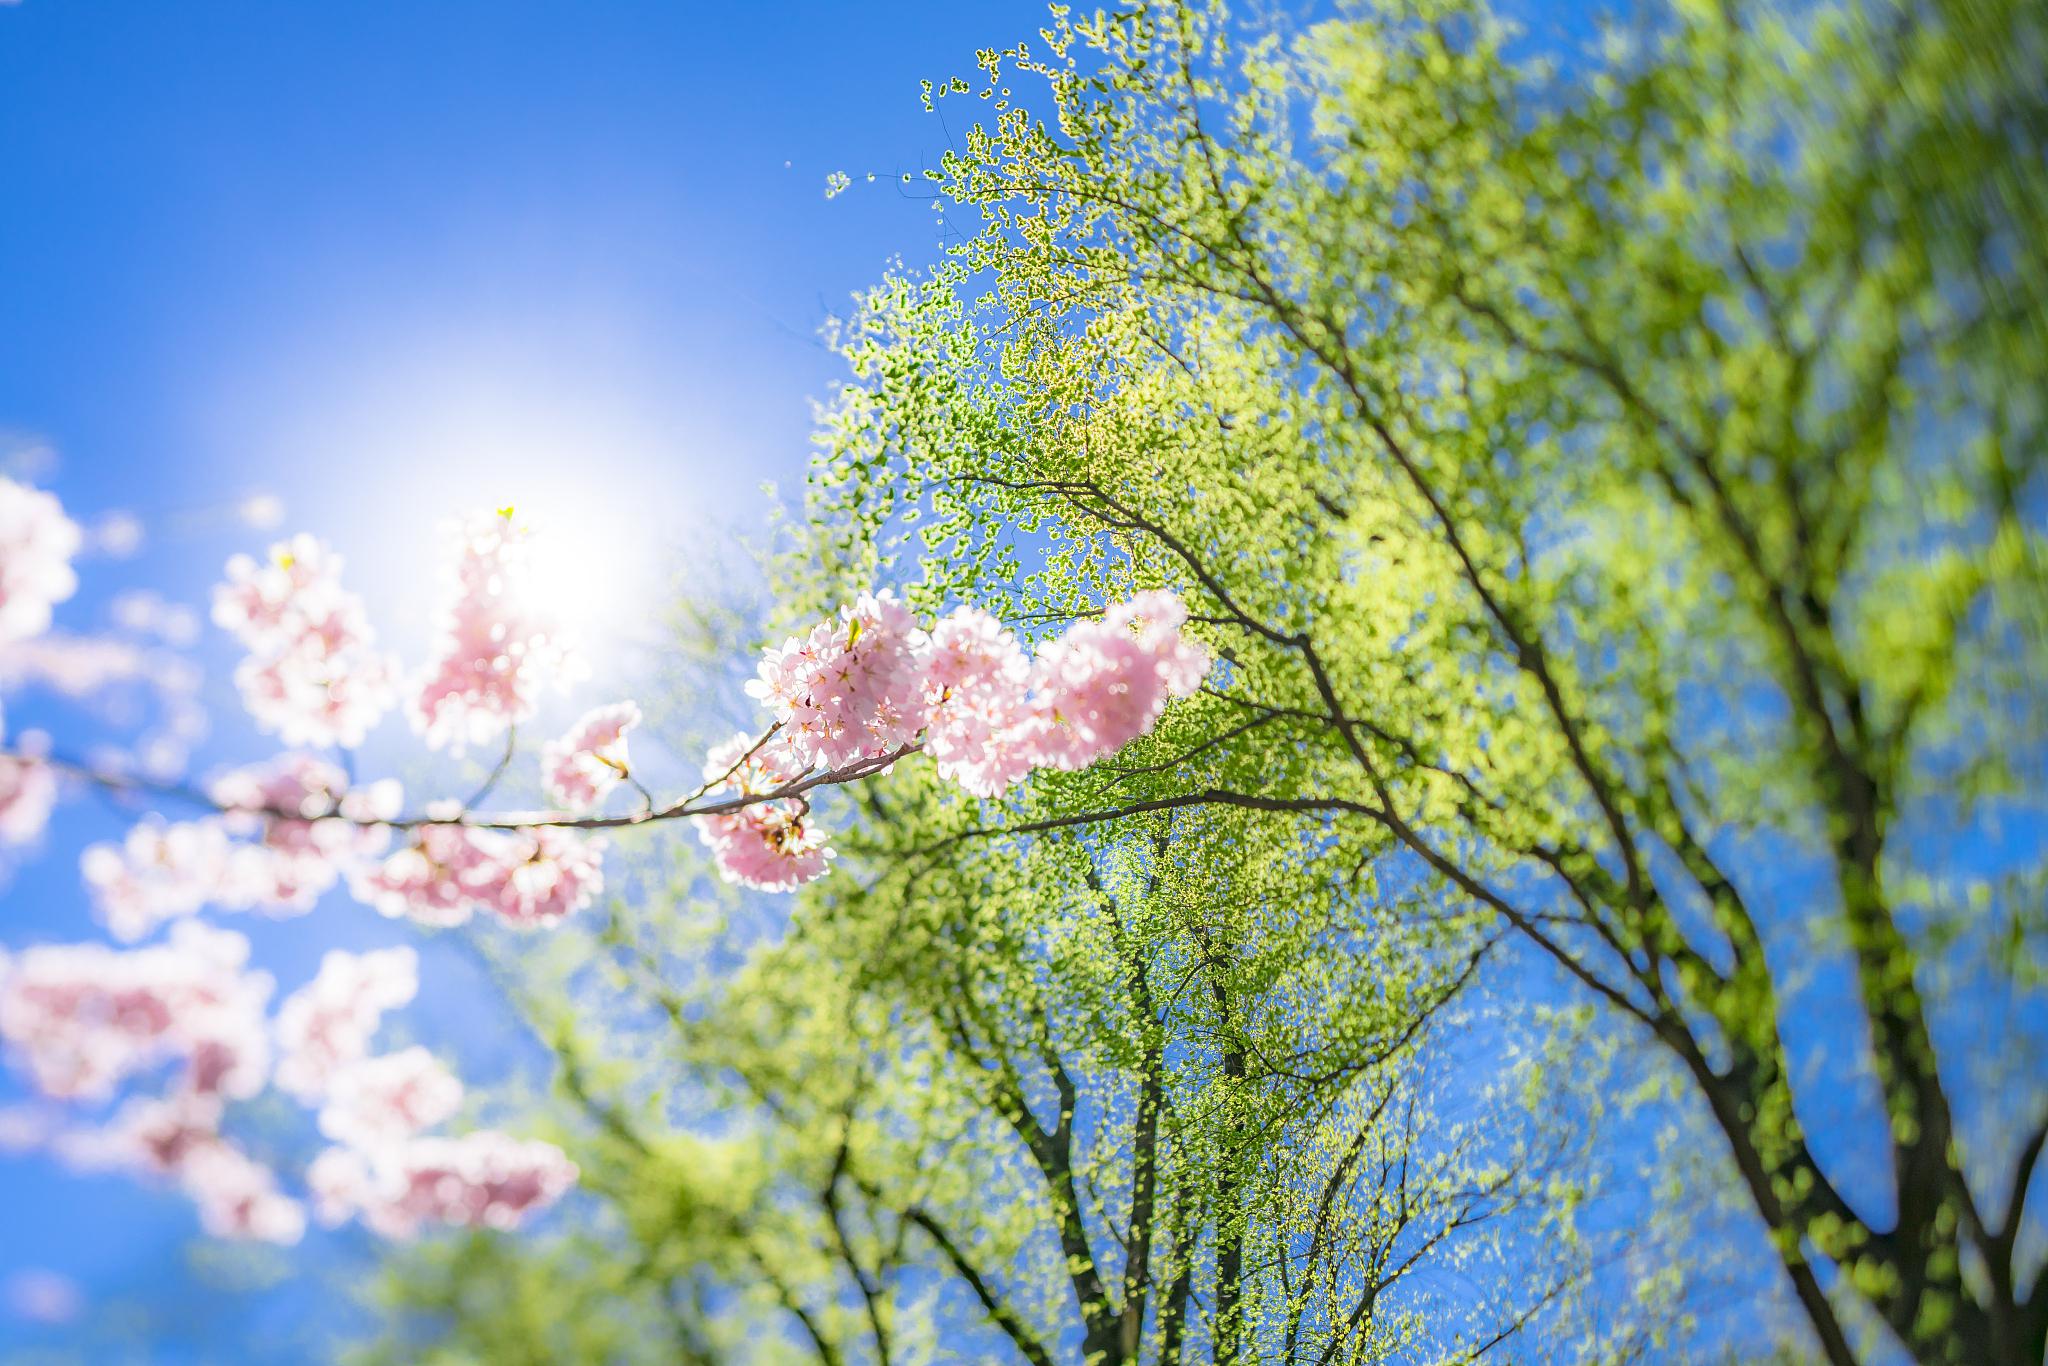 春天的美好:万物复苏,生命的季节 春天是一个充满生机和活力的季节